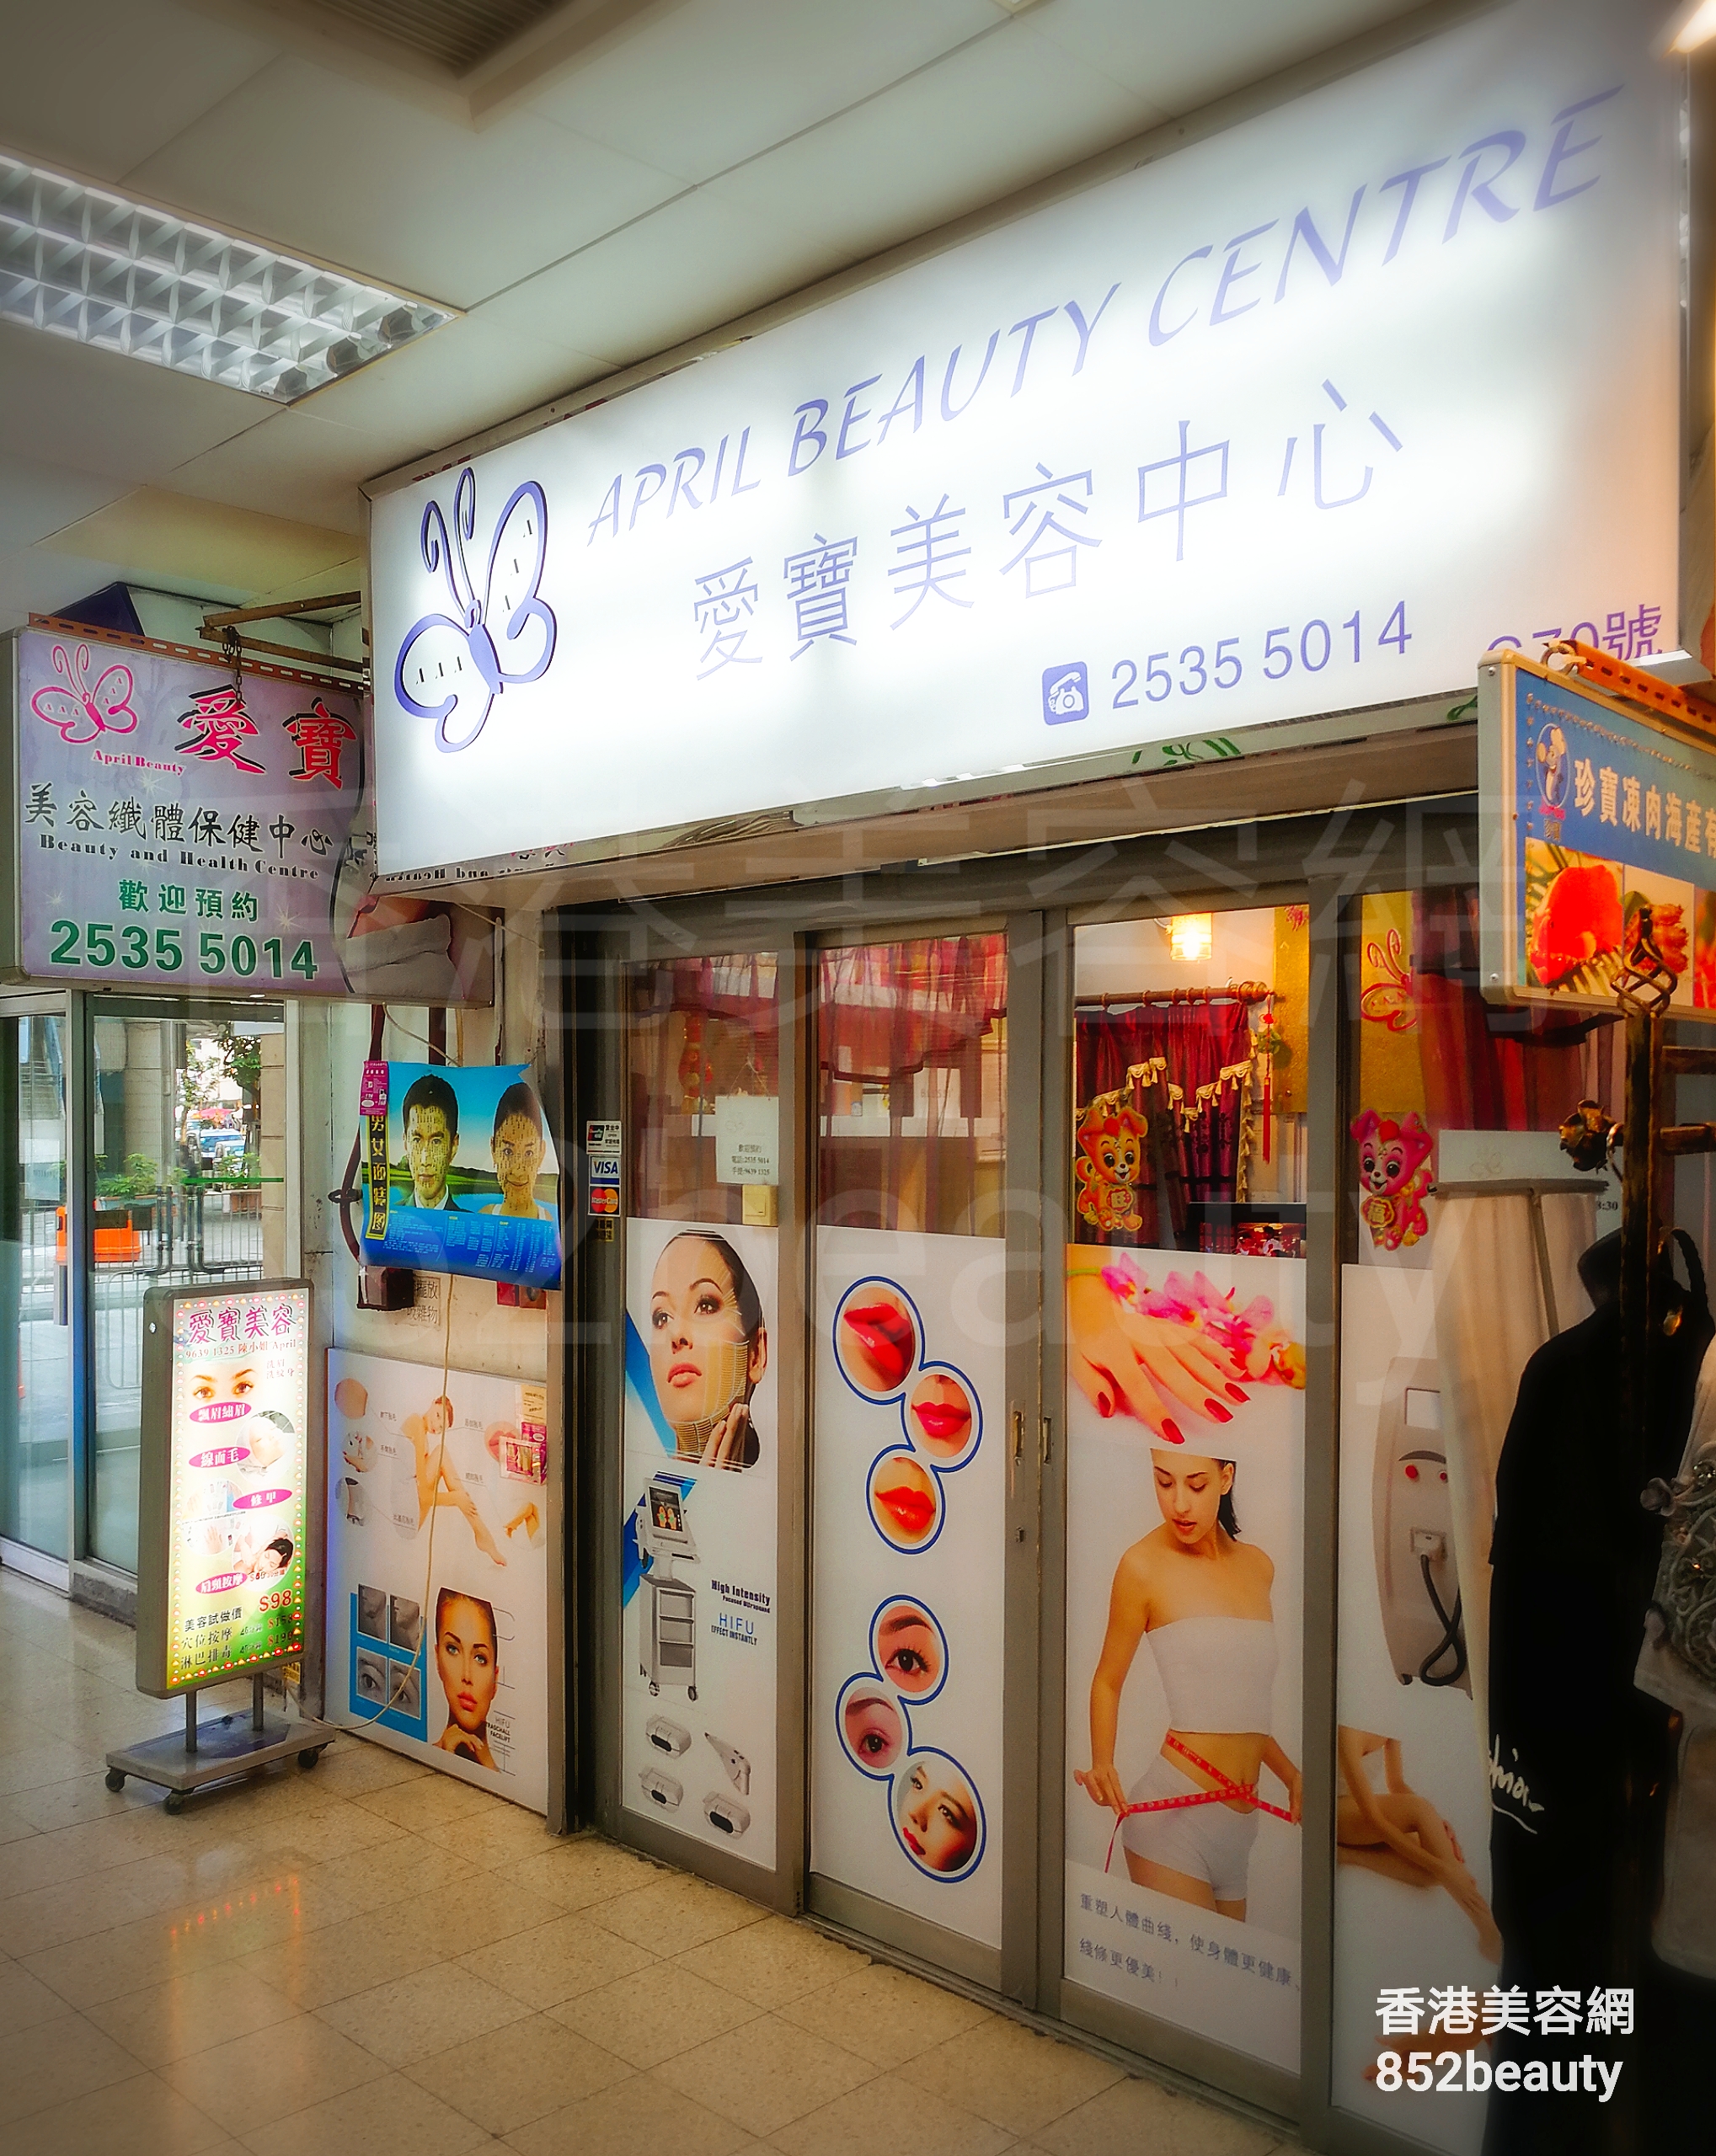 香港美容網 Hong Kong Beauty Salon 美容院 / 美容師: 愛寶美容纖體中心